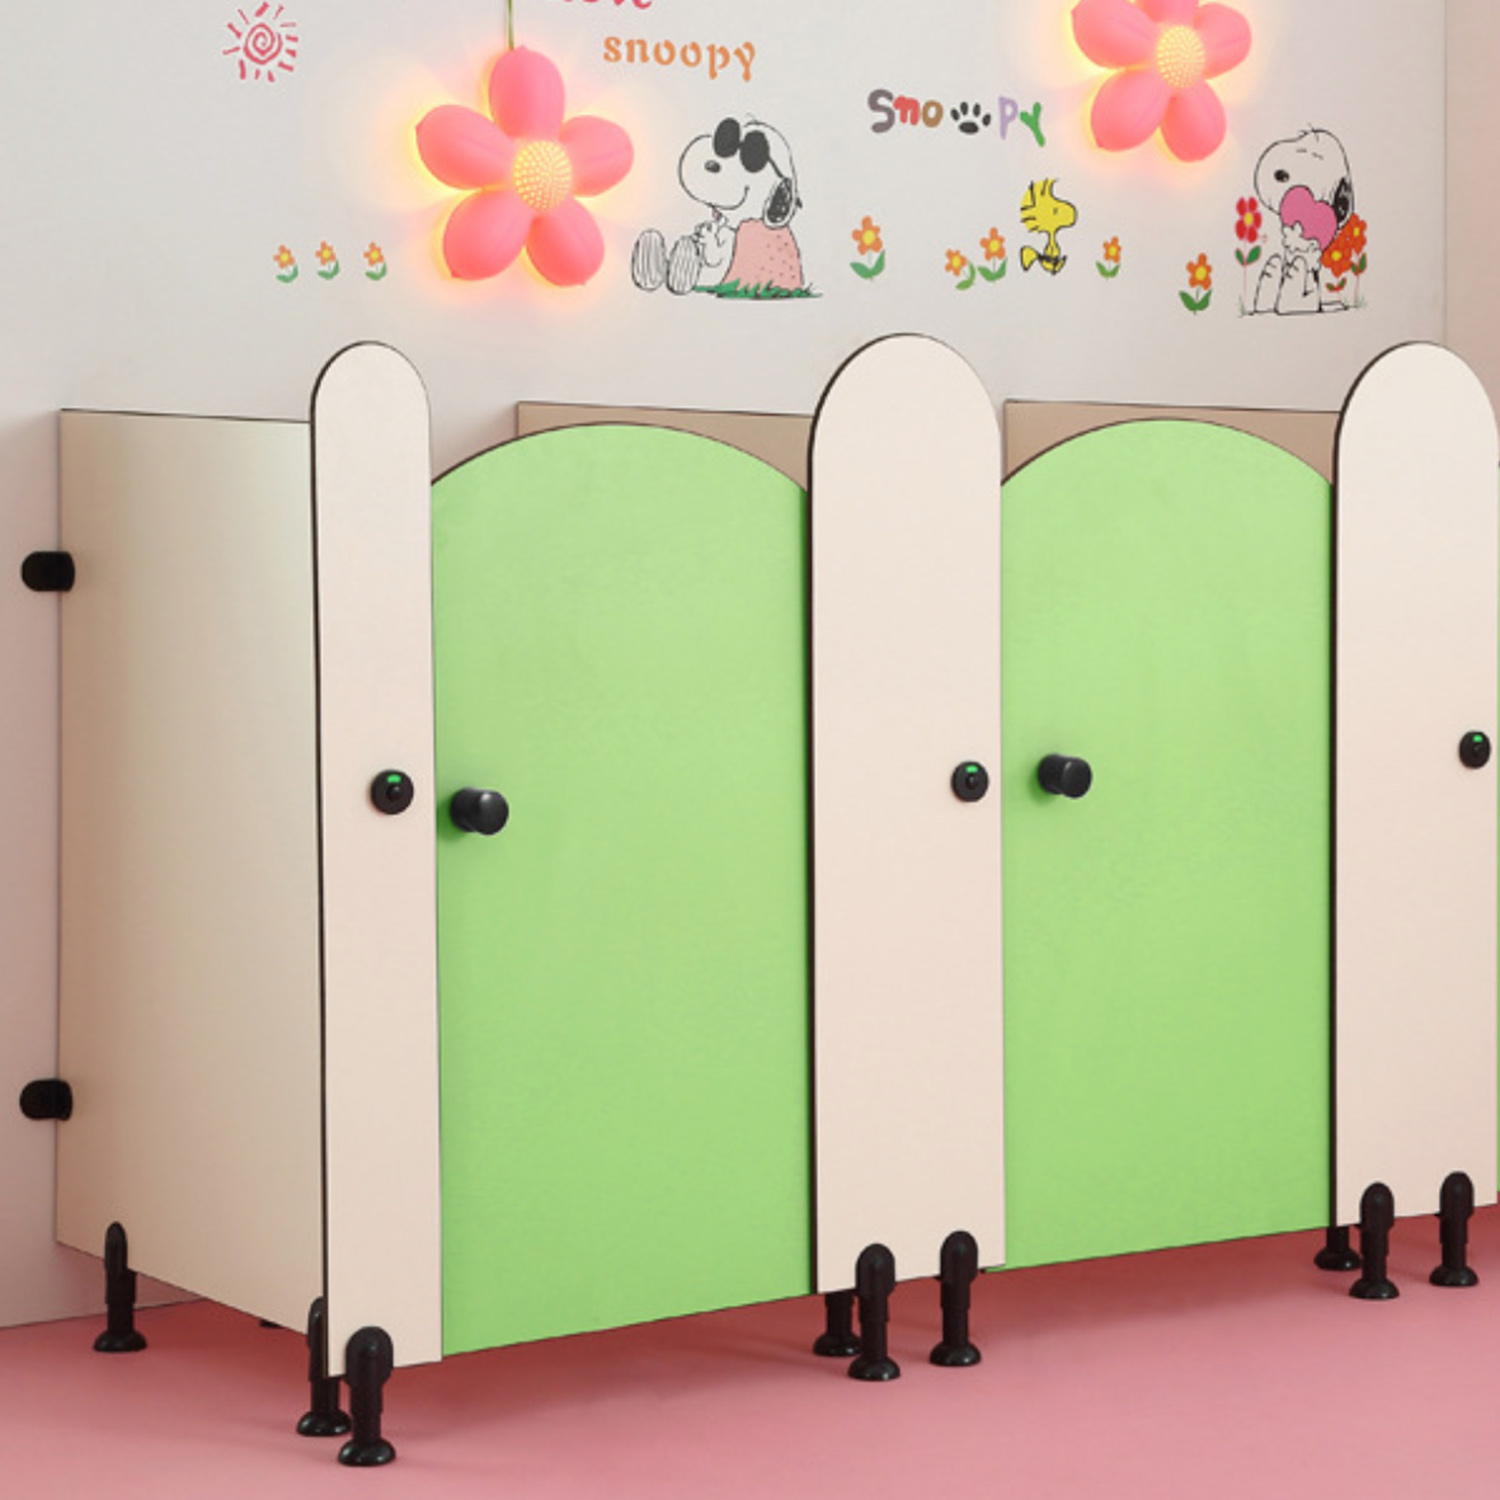 infants' school toilet cubicles